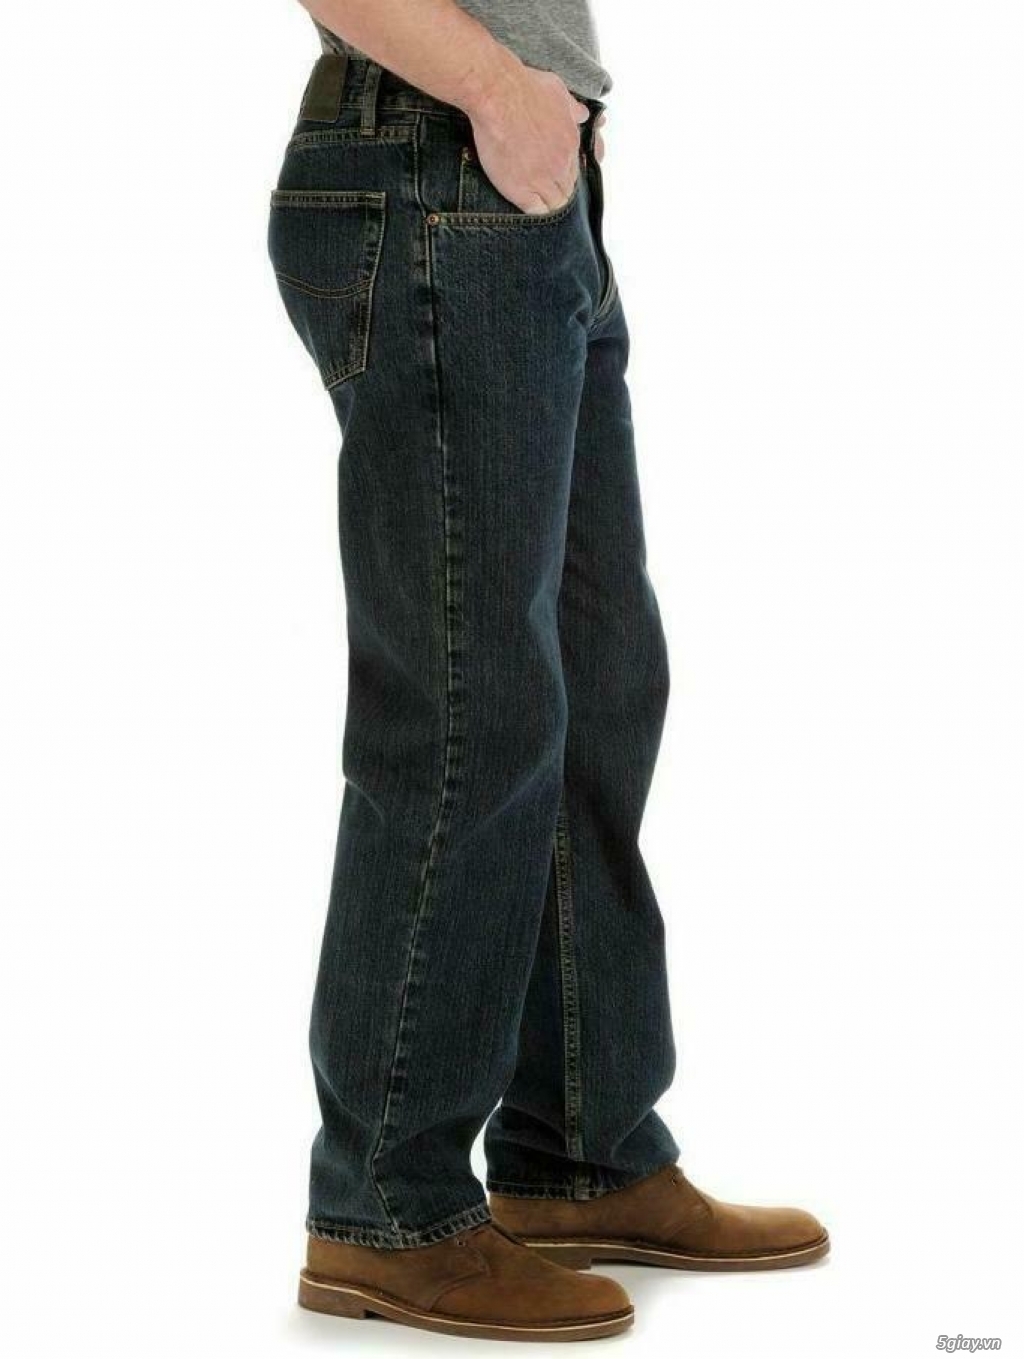 Cần bán quần Jeans Lee chính hãng 31x30 new with tag màu xanh đen - 3